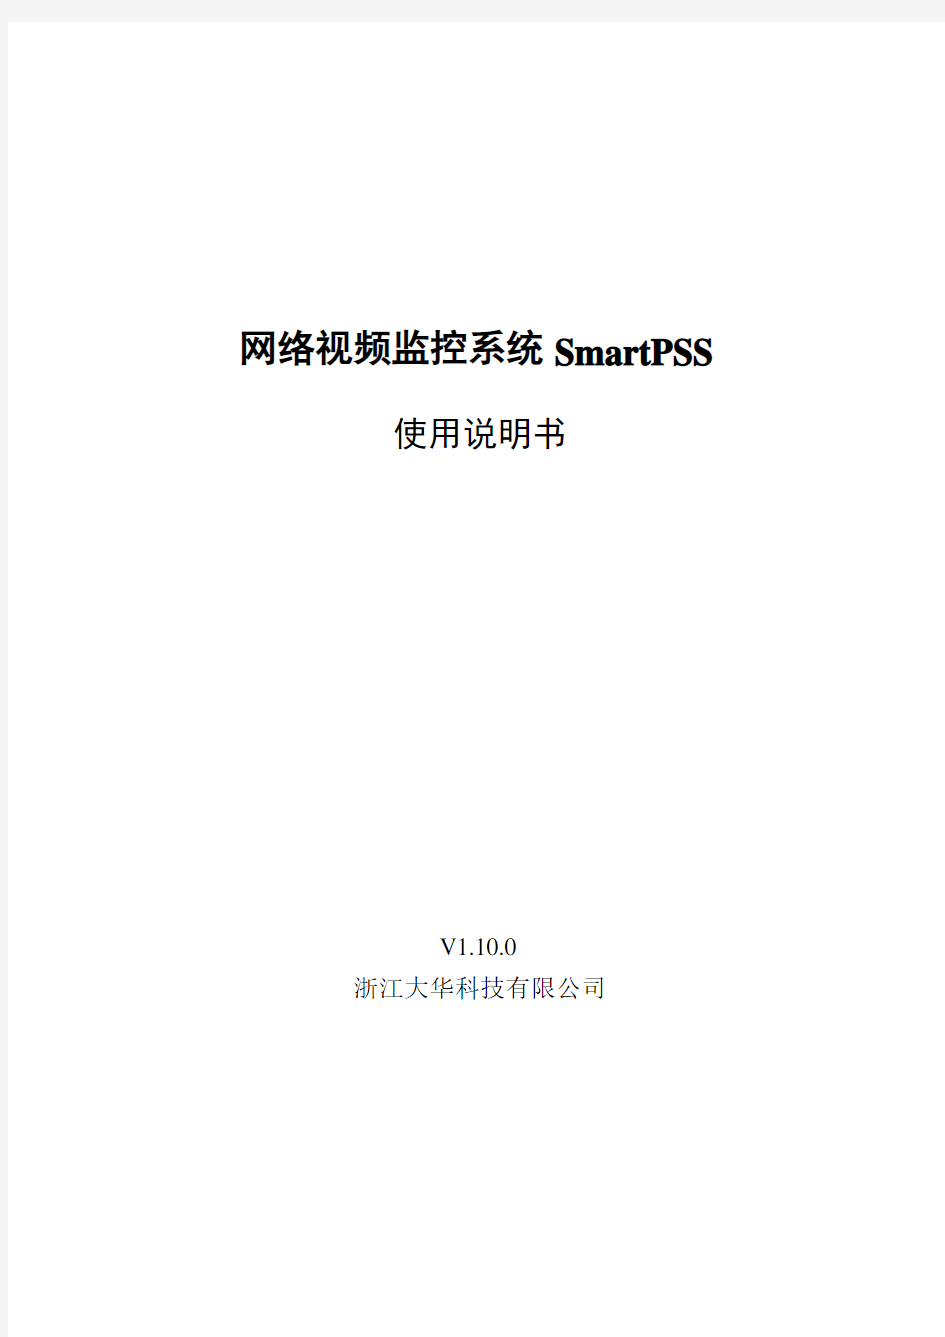 智能视频监控系统SmartPSS使用说明书1.10.0